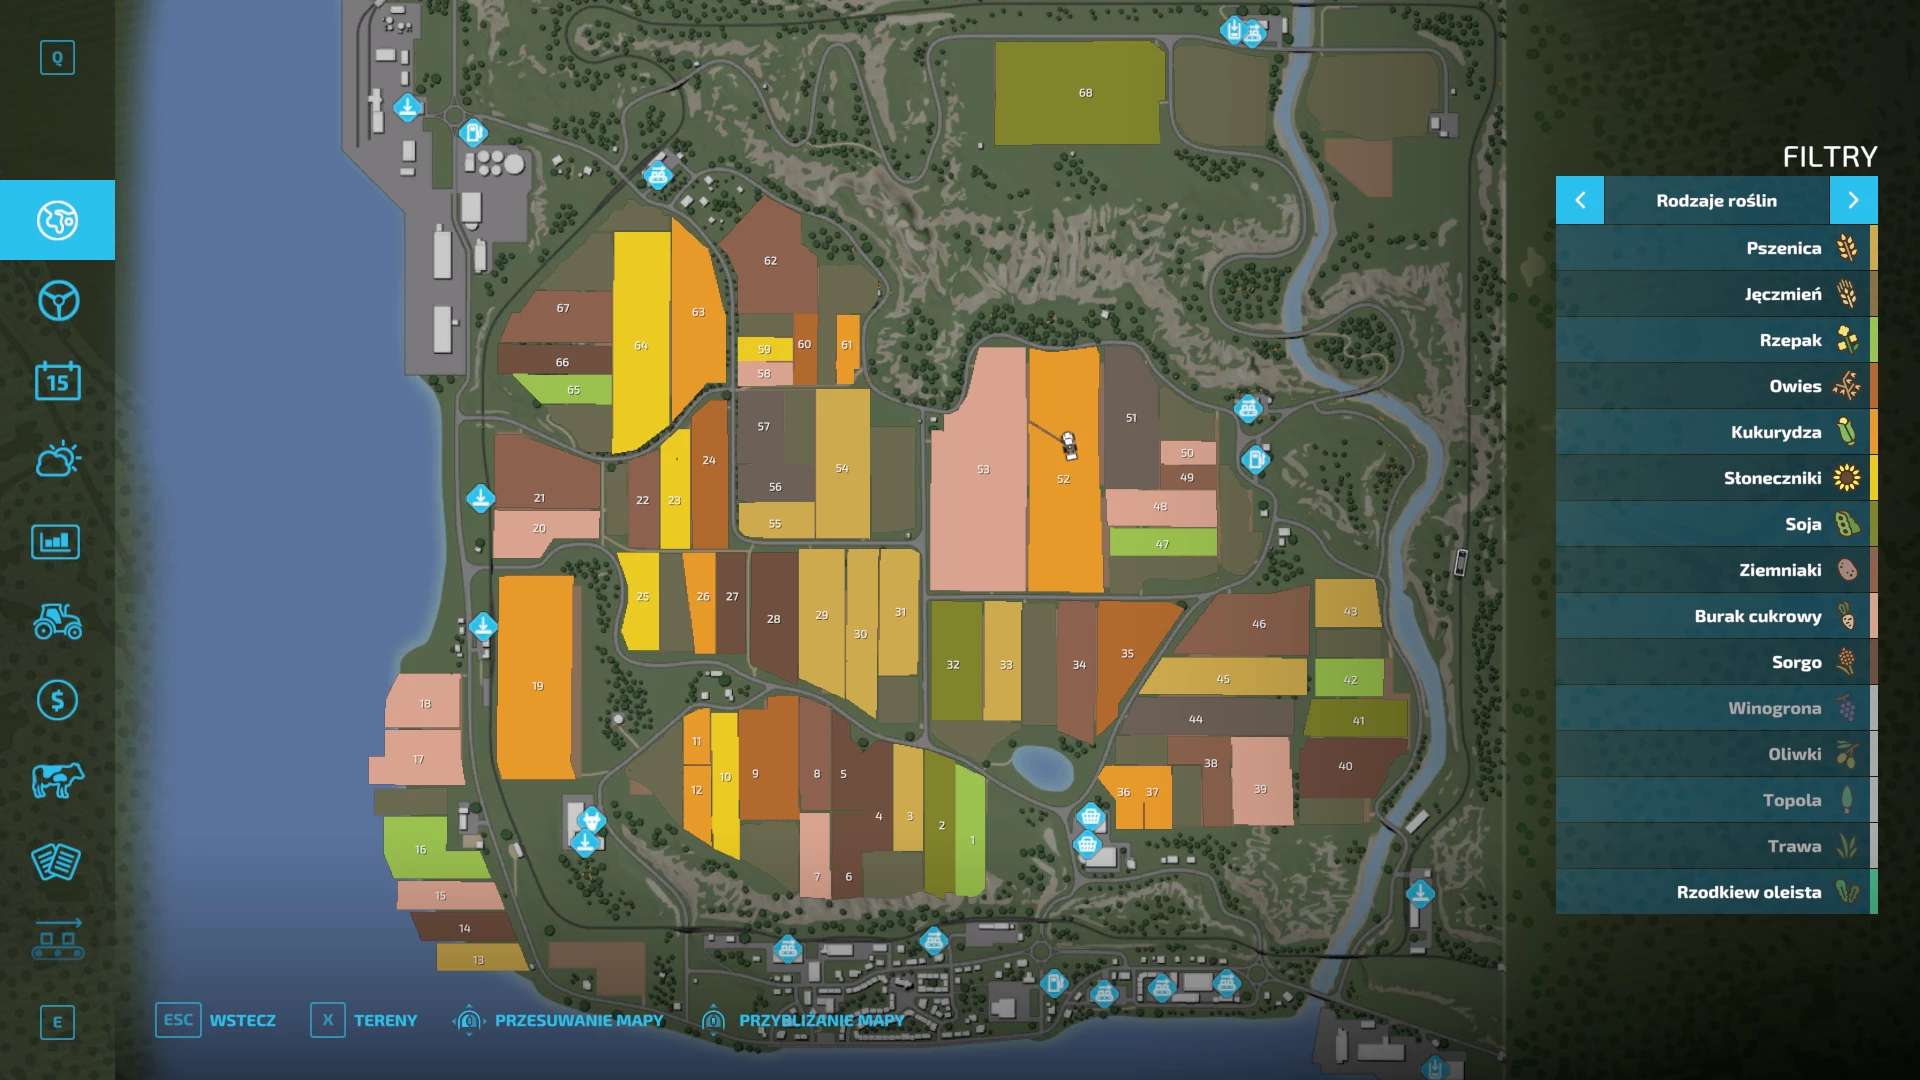 Fmfs Map V Farming Simulator Mods Farming Simulator Mods Images And Photos Finder